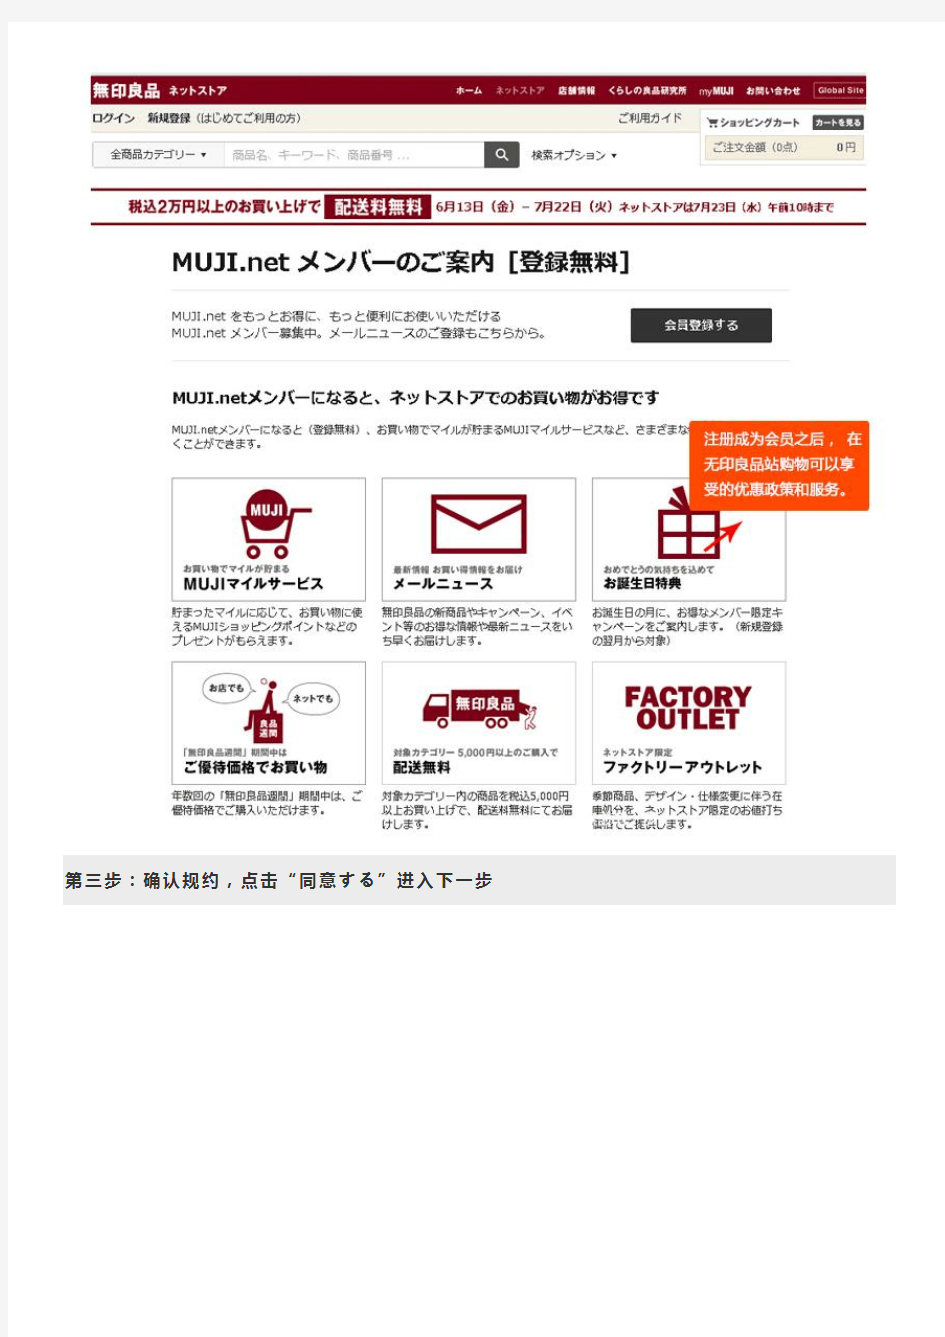 日本无印良品官网注册购物流程—转运日本